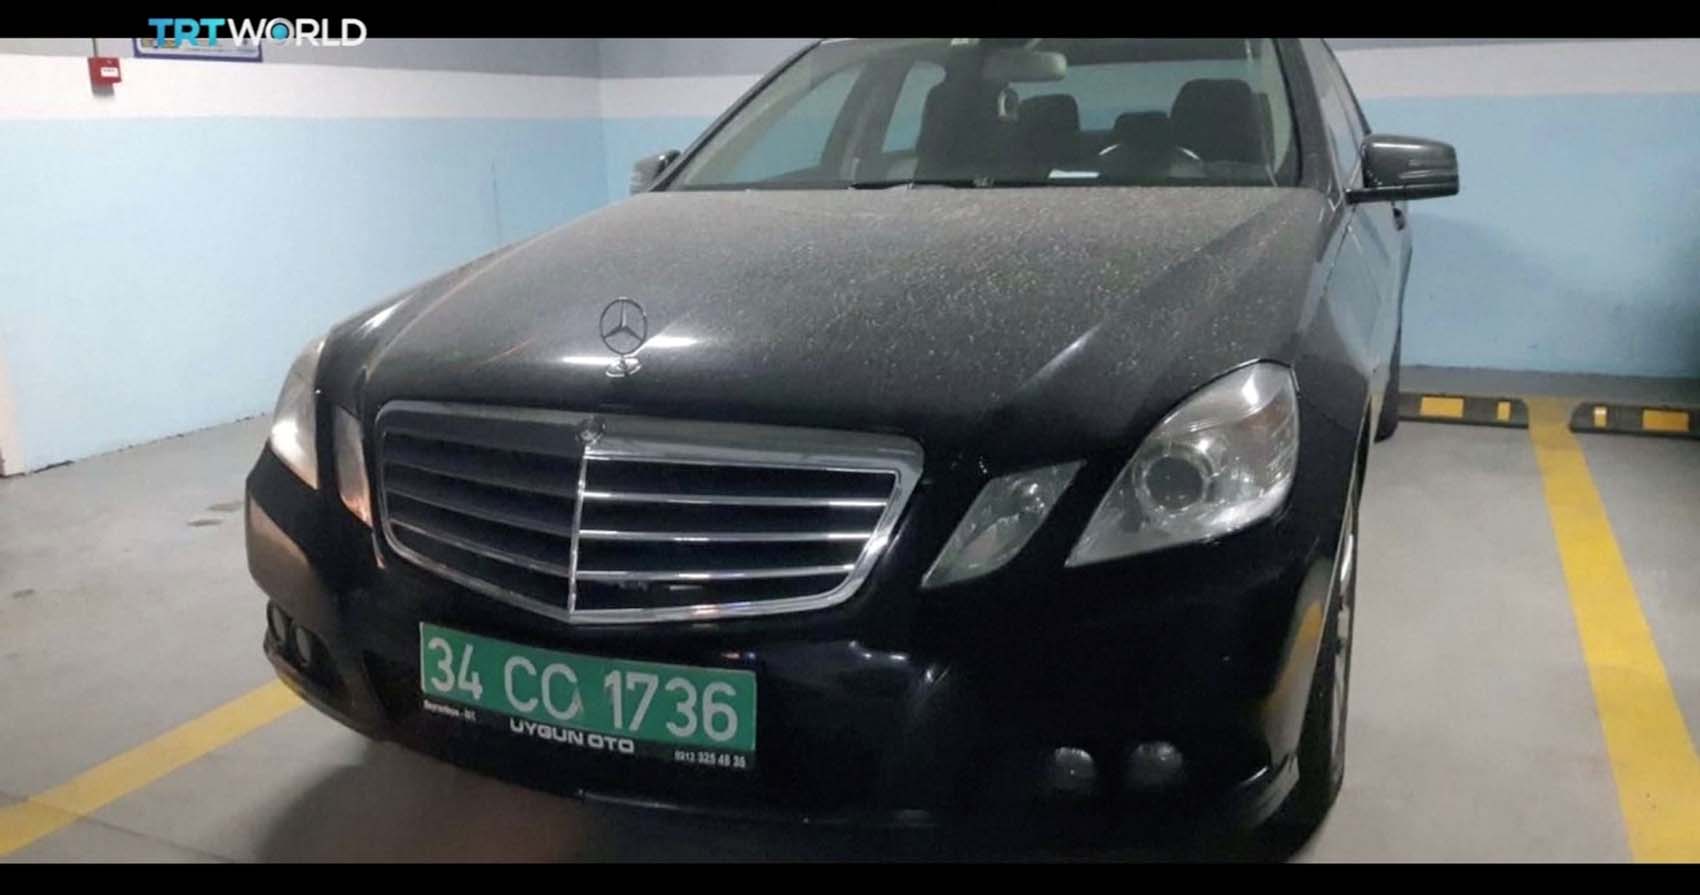 Un carro del consulado saudí abandonado en un estacionamiento de Estambul (fotos)